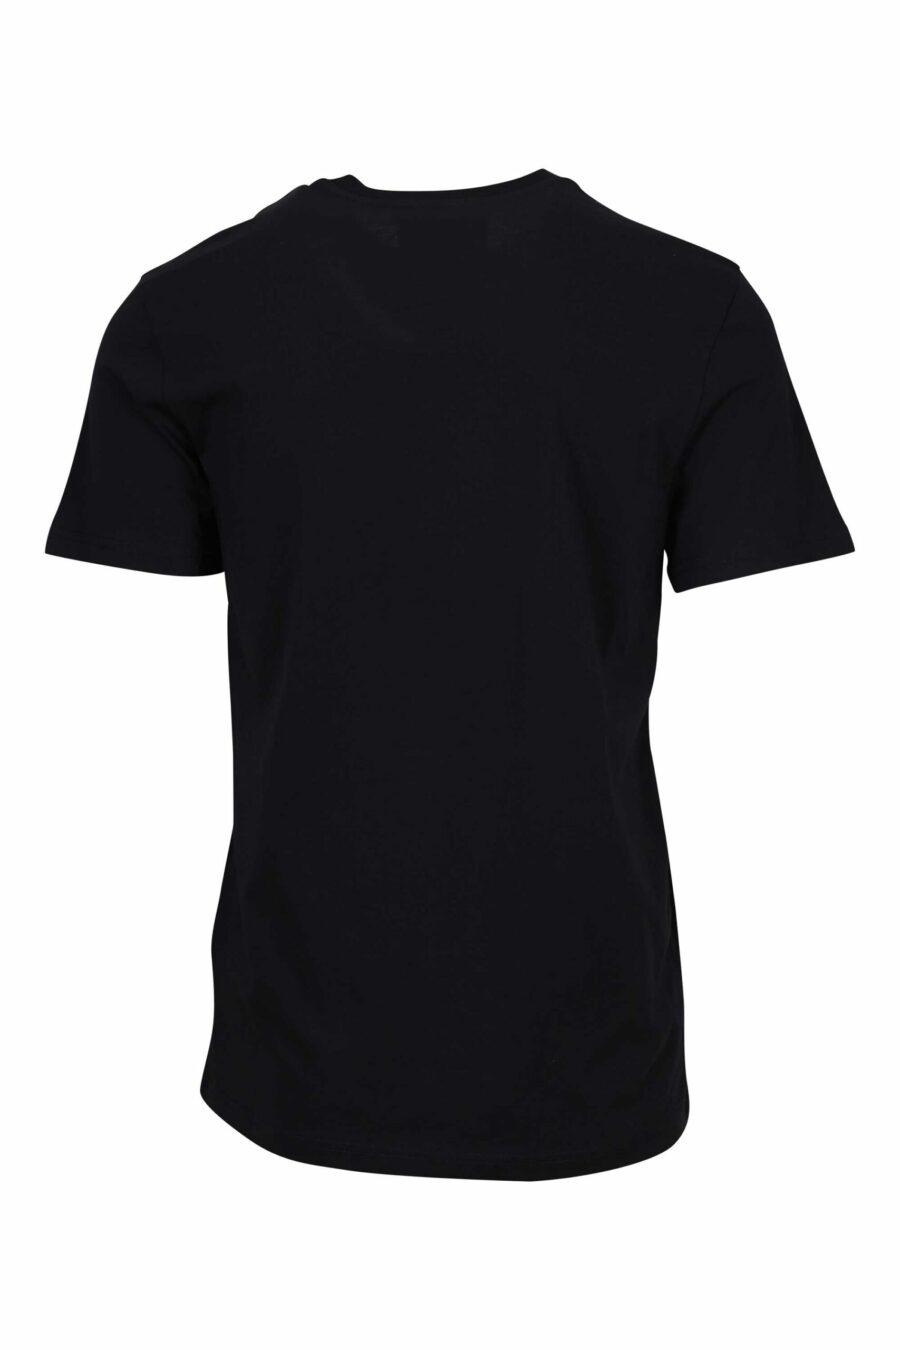 T-shirt noir surdimensionné en coton biologique avec maxilogue noir classique - 667113752051 1 scaled